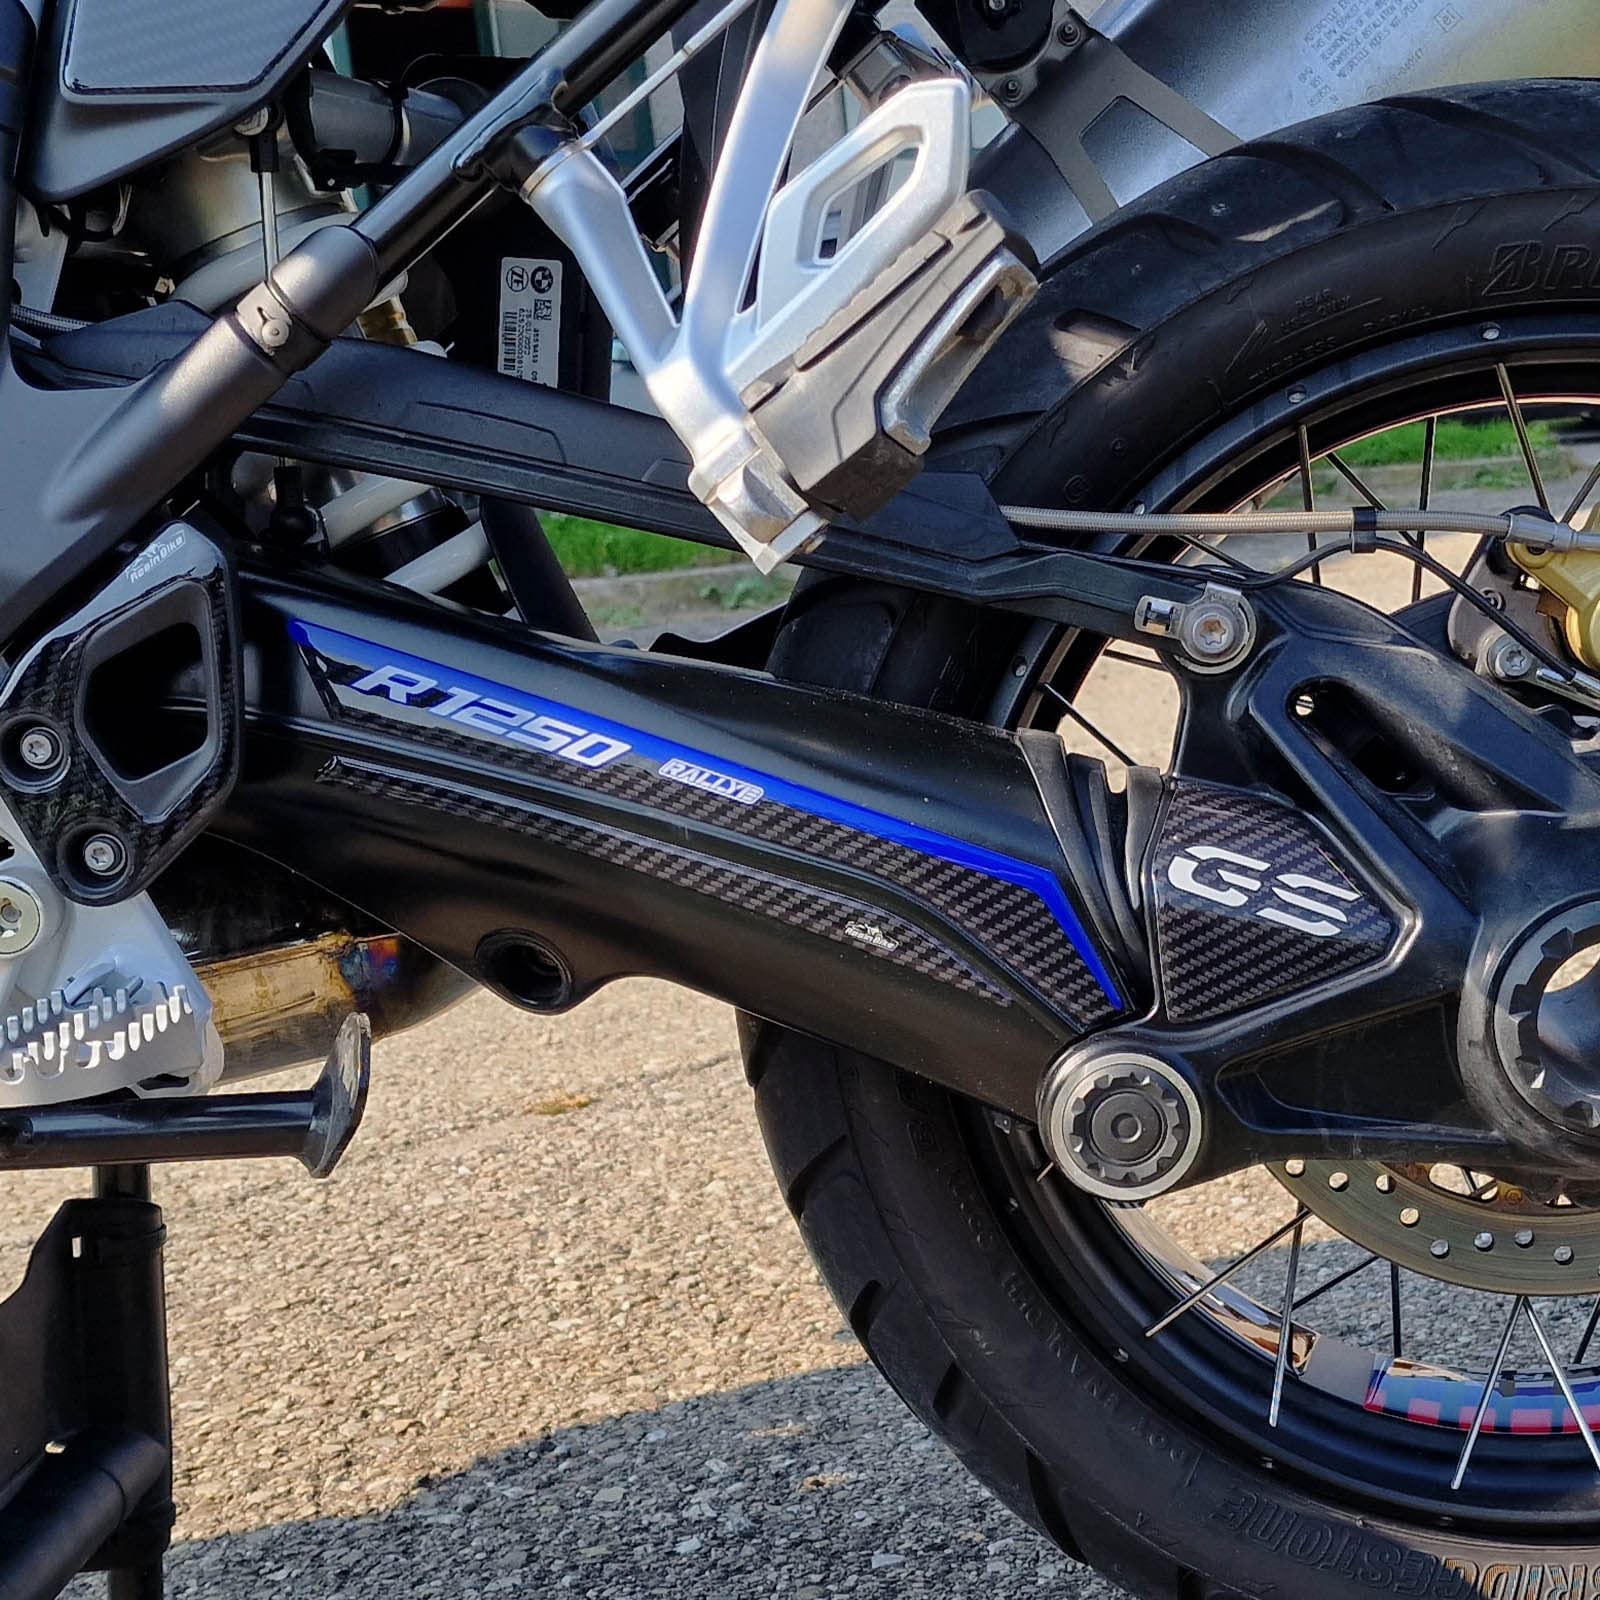 Resin Bike Aufkleber für Motorrad Kompatibel mit BMW R 1250 GS Adventure 2022 Rallye. Schutz für den Schwingsbereich vor Stößen und Kratzern. 3D-Harzklebstoff - Stickers - Made in Italy von Resin Bike